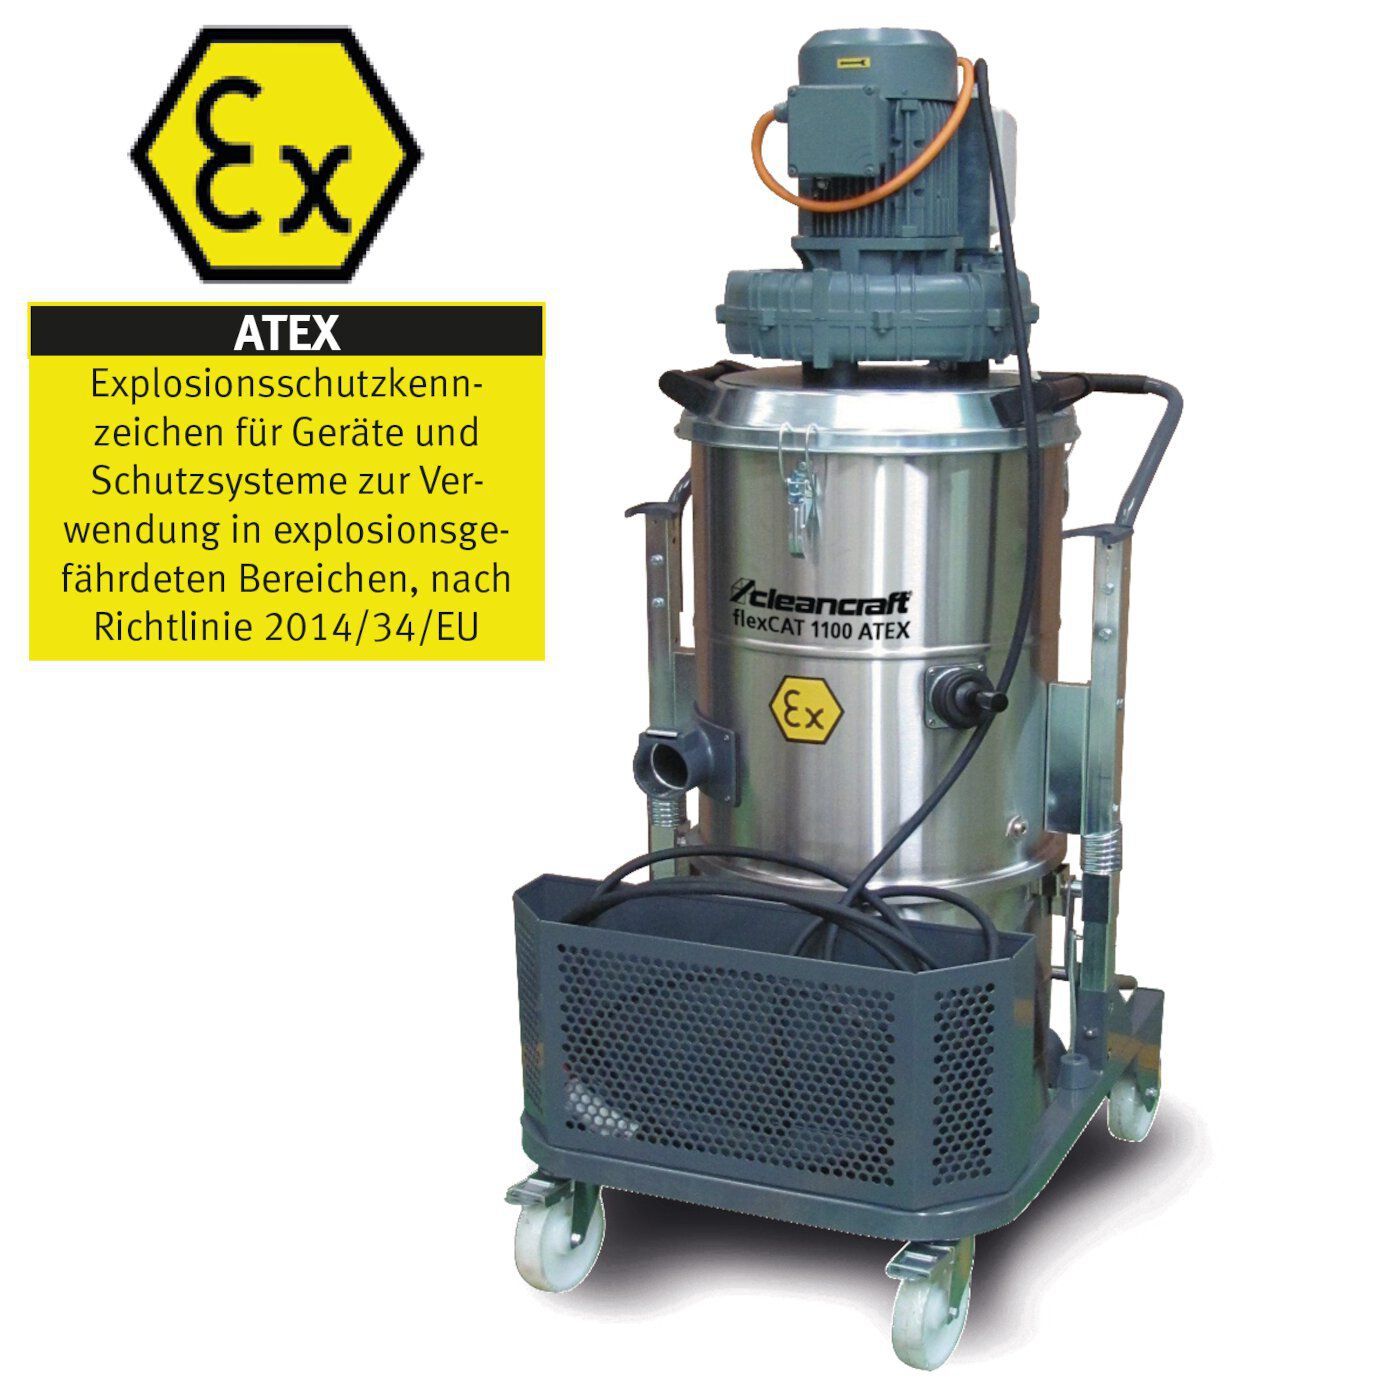 Cleancraft Industriesauger flexCAT 1100 ATEX für staubexplosionsgefährdete Bereiche